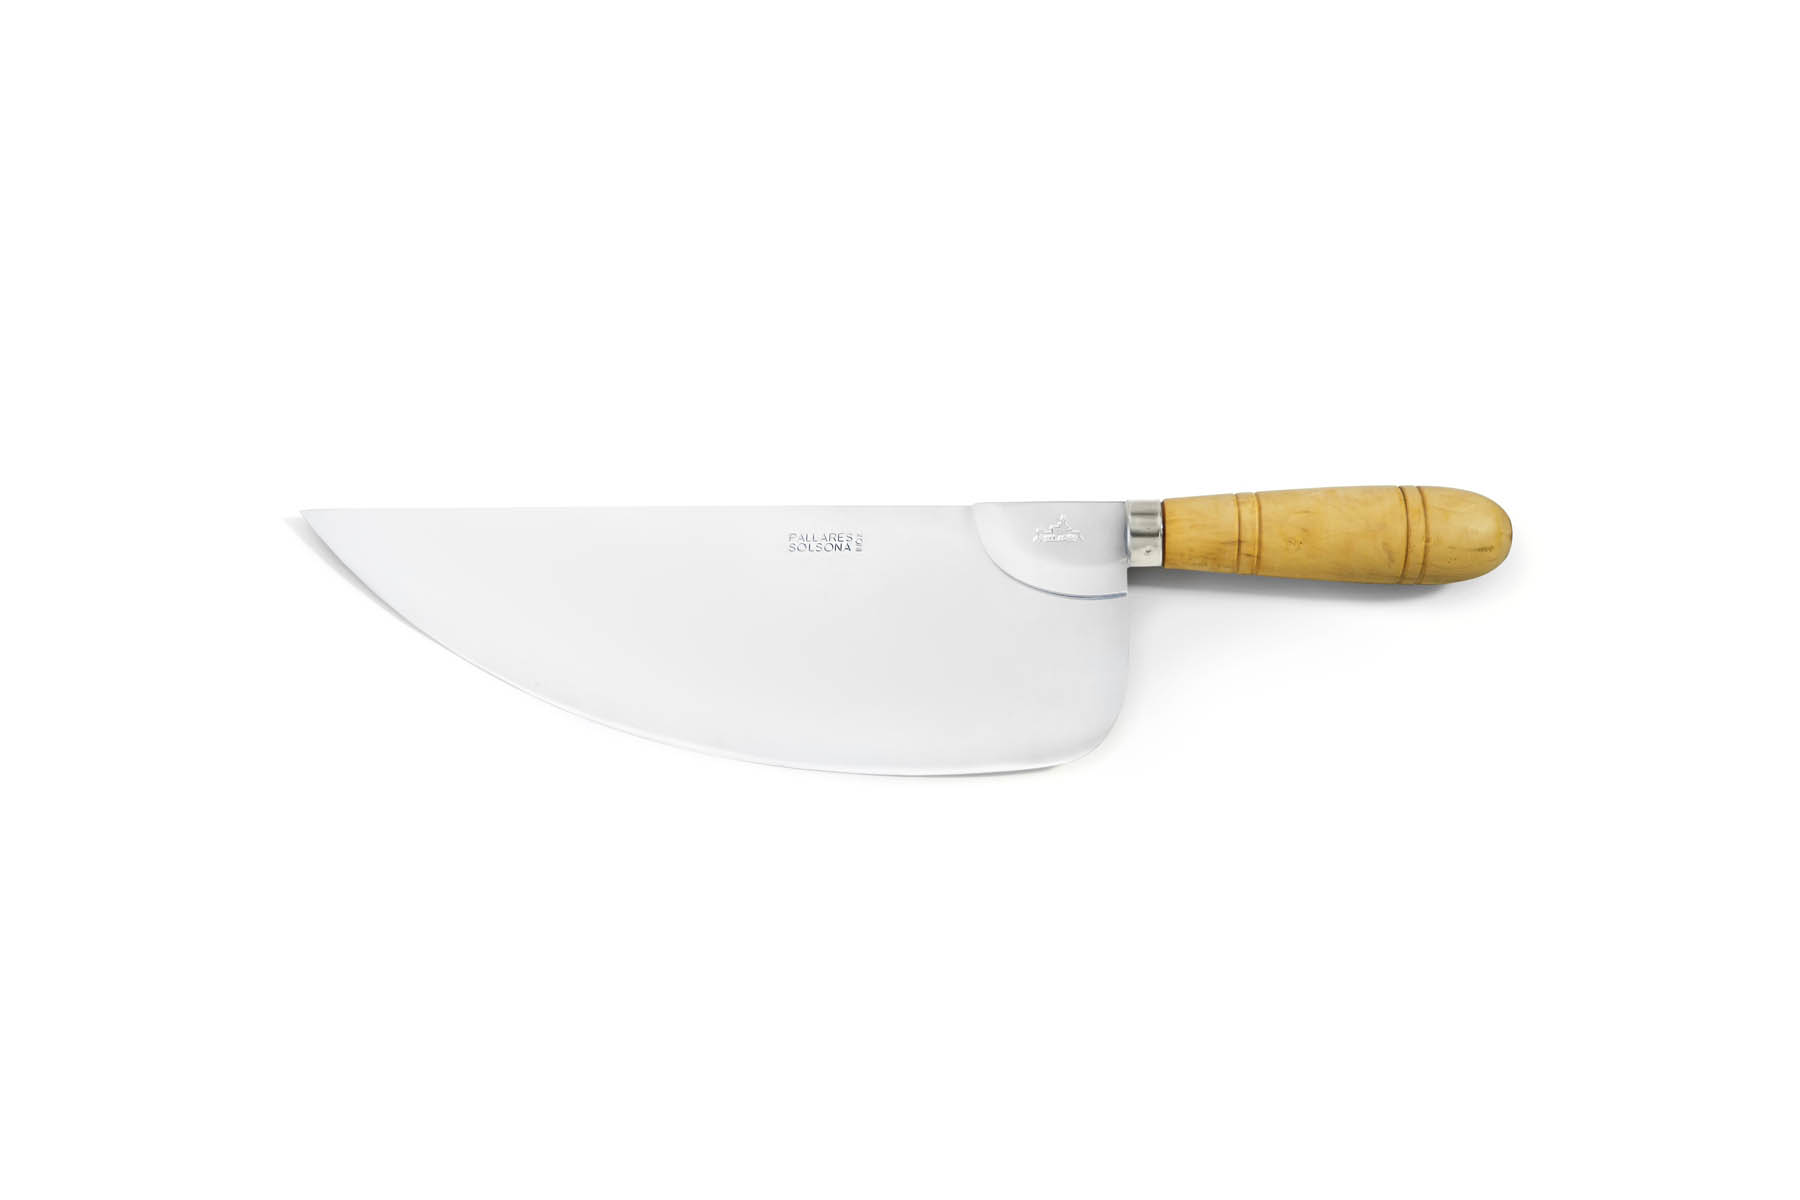 Couteau de cuisine Pallarès Solsona - Couteau couperet pour poisson 40 cm acier inox